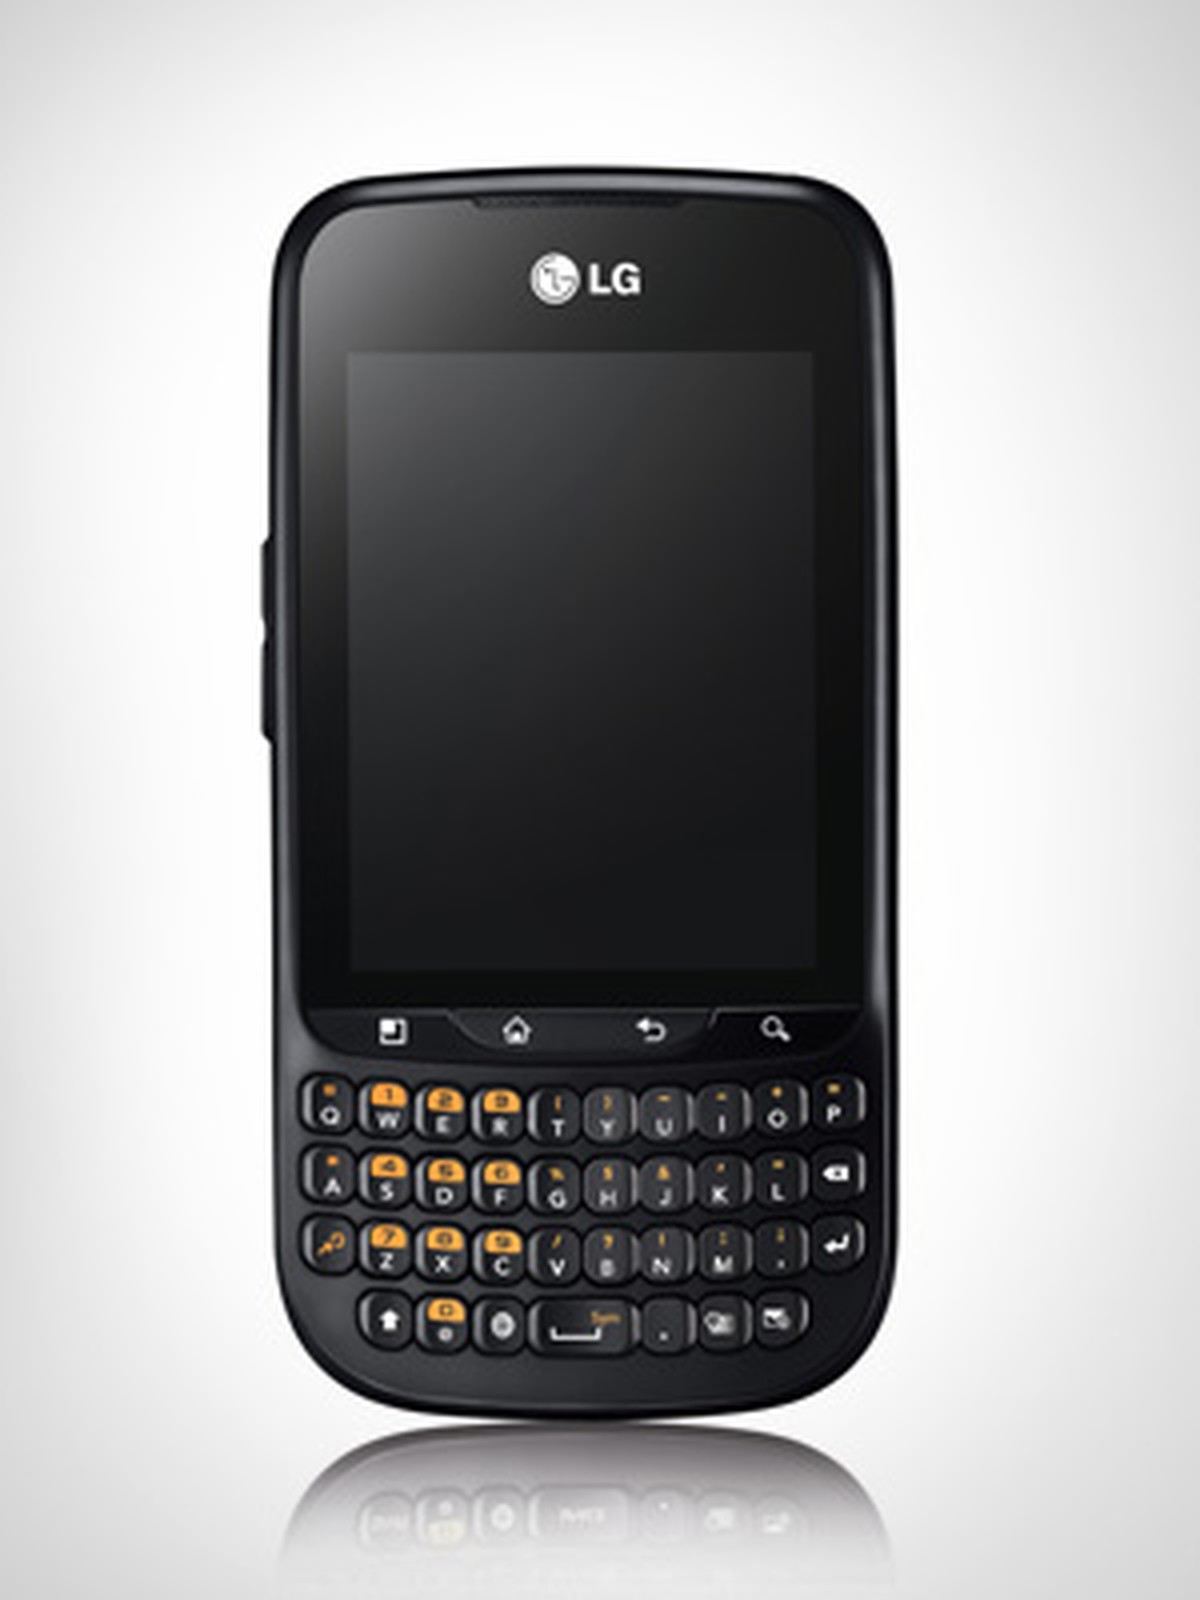 Смартфон LG Optimus Pro c660. LG С кверти клавиатурой. Кнопочный смартфон на андроиде. Смартфон с кнопочной клавиатурой и сенсорным. Кнопочный андроид без камеры